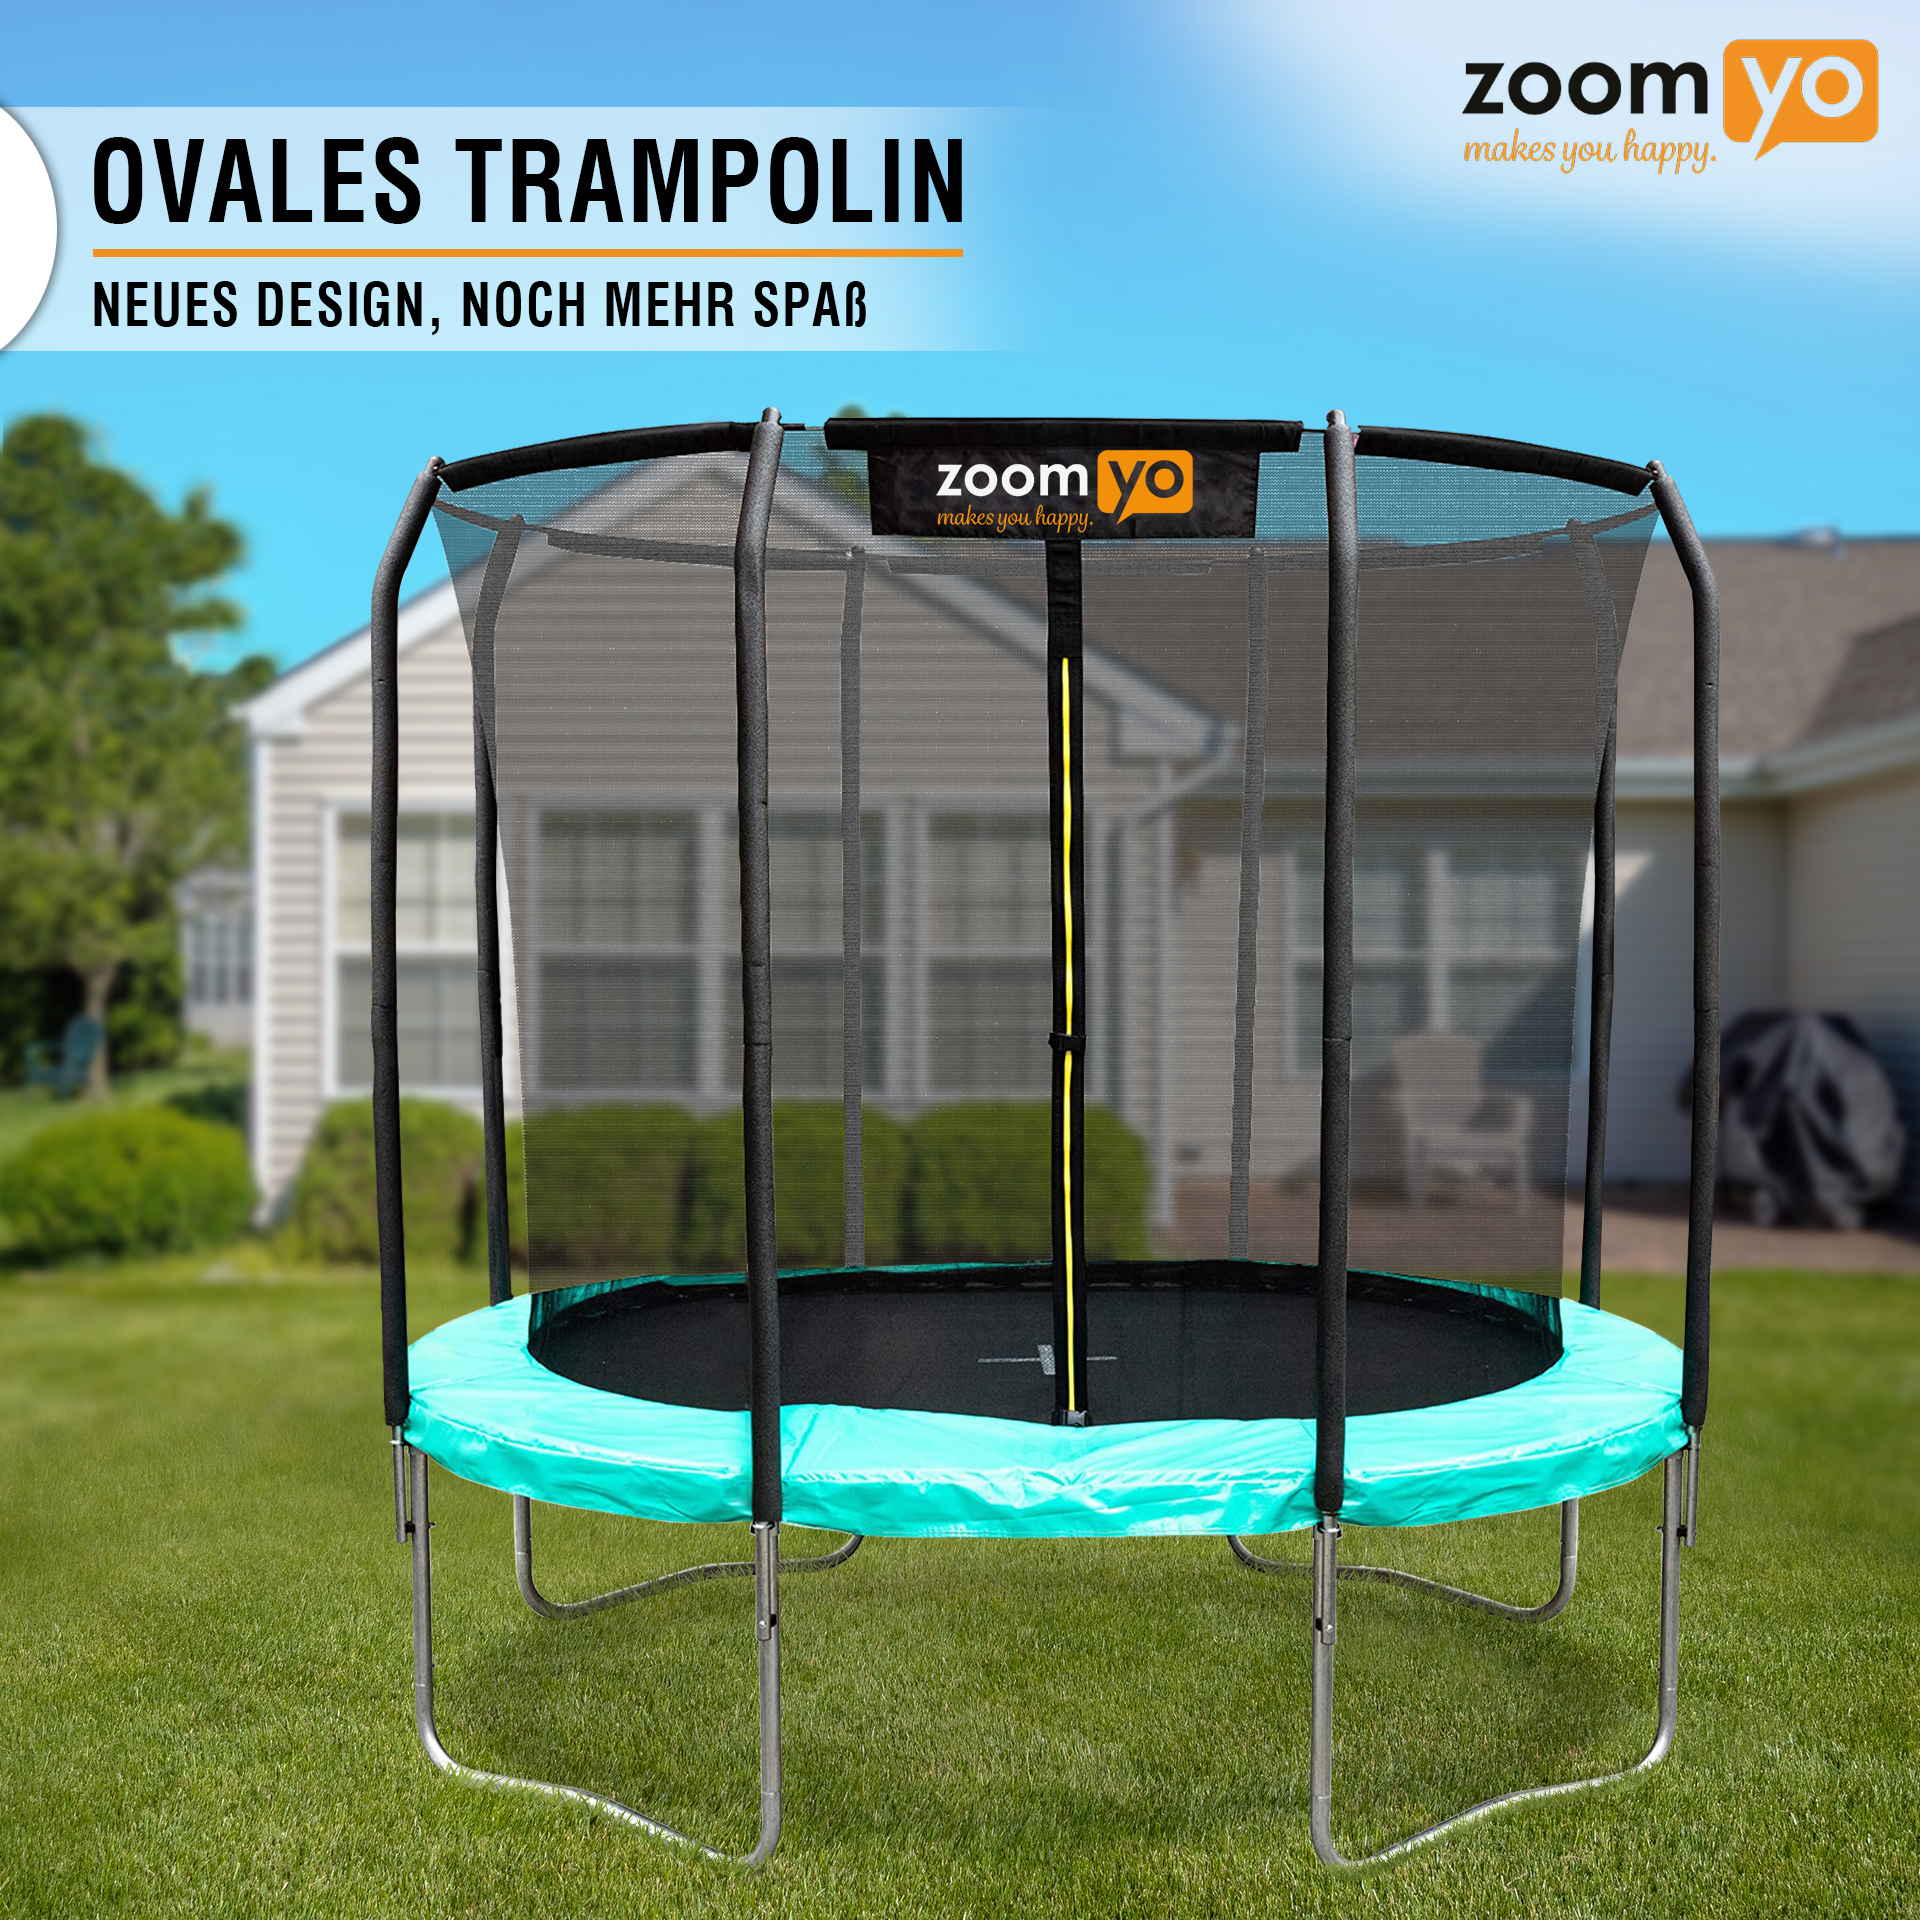 ZOOMYO Trampolin,oval,Leiter separat erhältlich,für komplexe schwarz-Grün Trampolin, Sprungtechniken